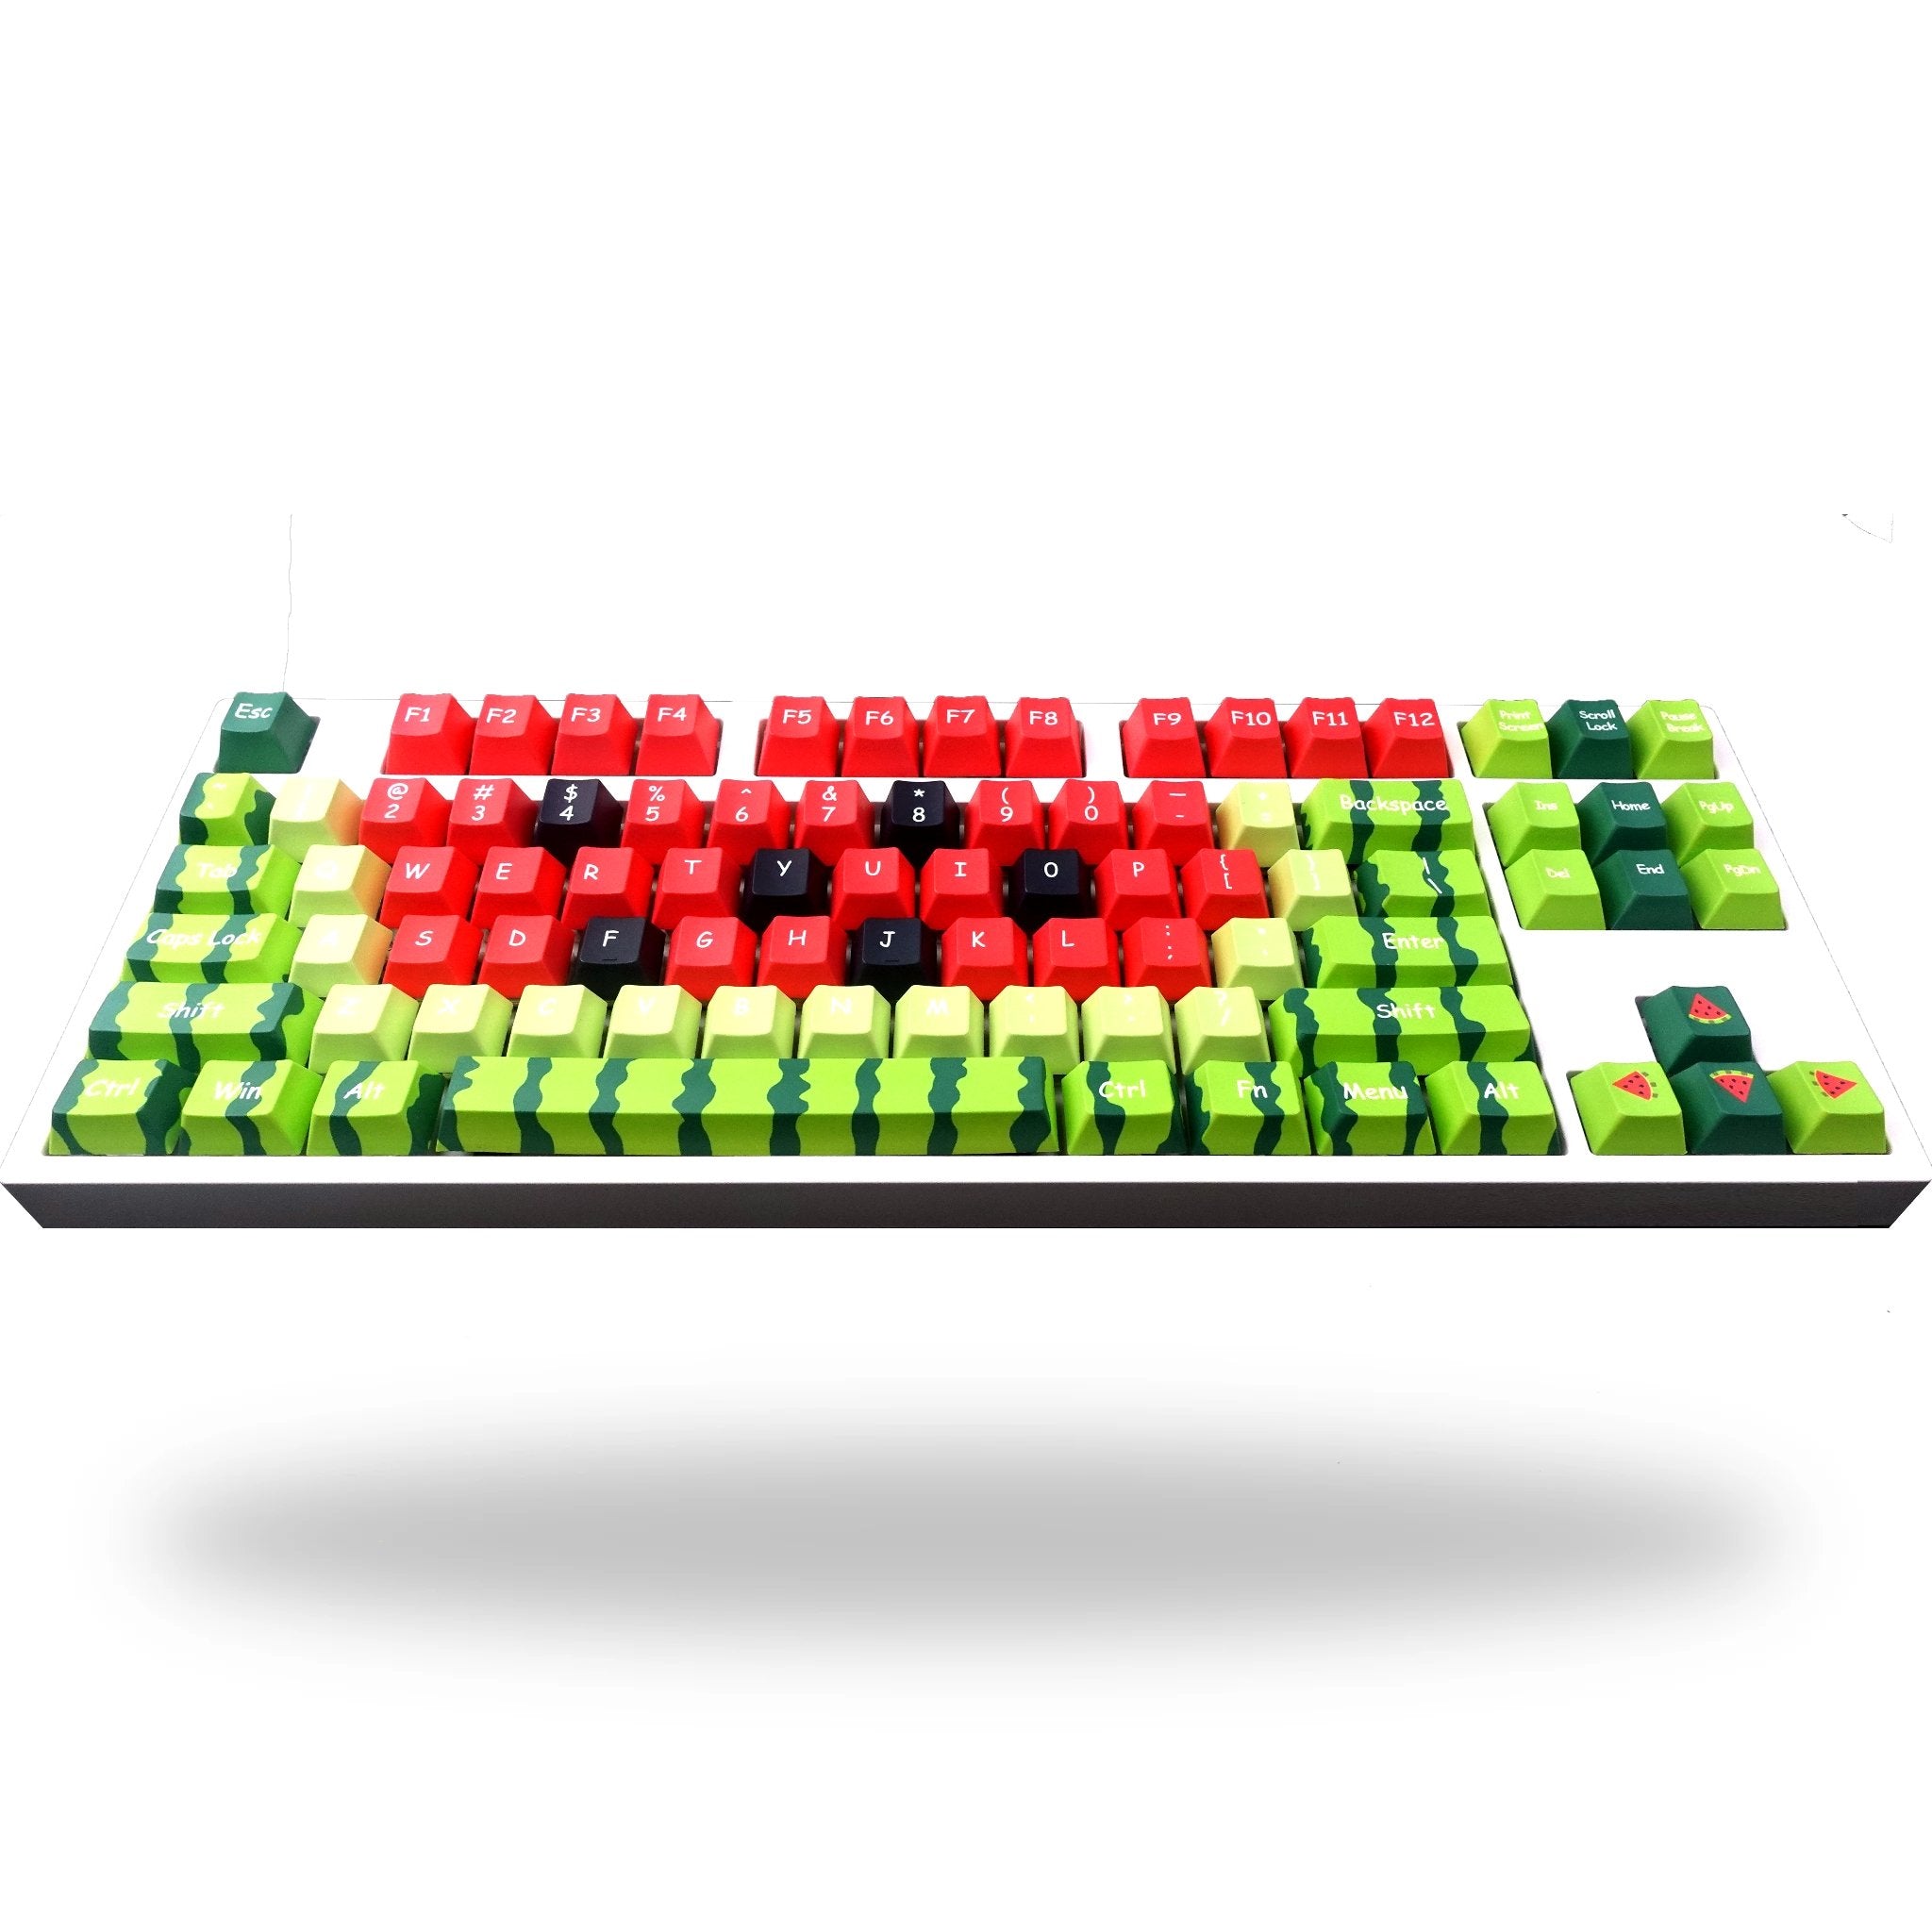 Watermelon Keyboard | Alpha 87 (80%) | 87 Keys Tenkeyless Keyboard - Goblintechkeys